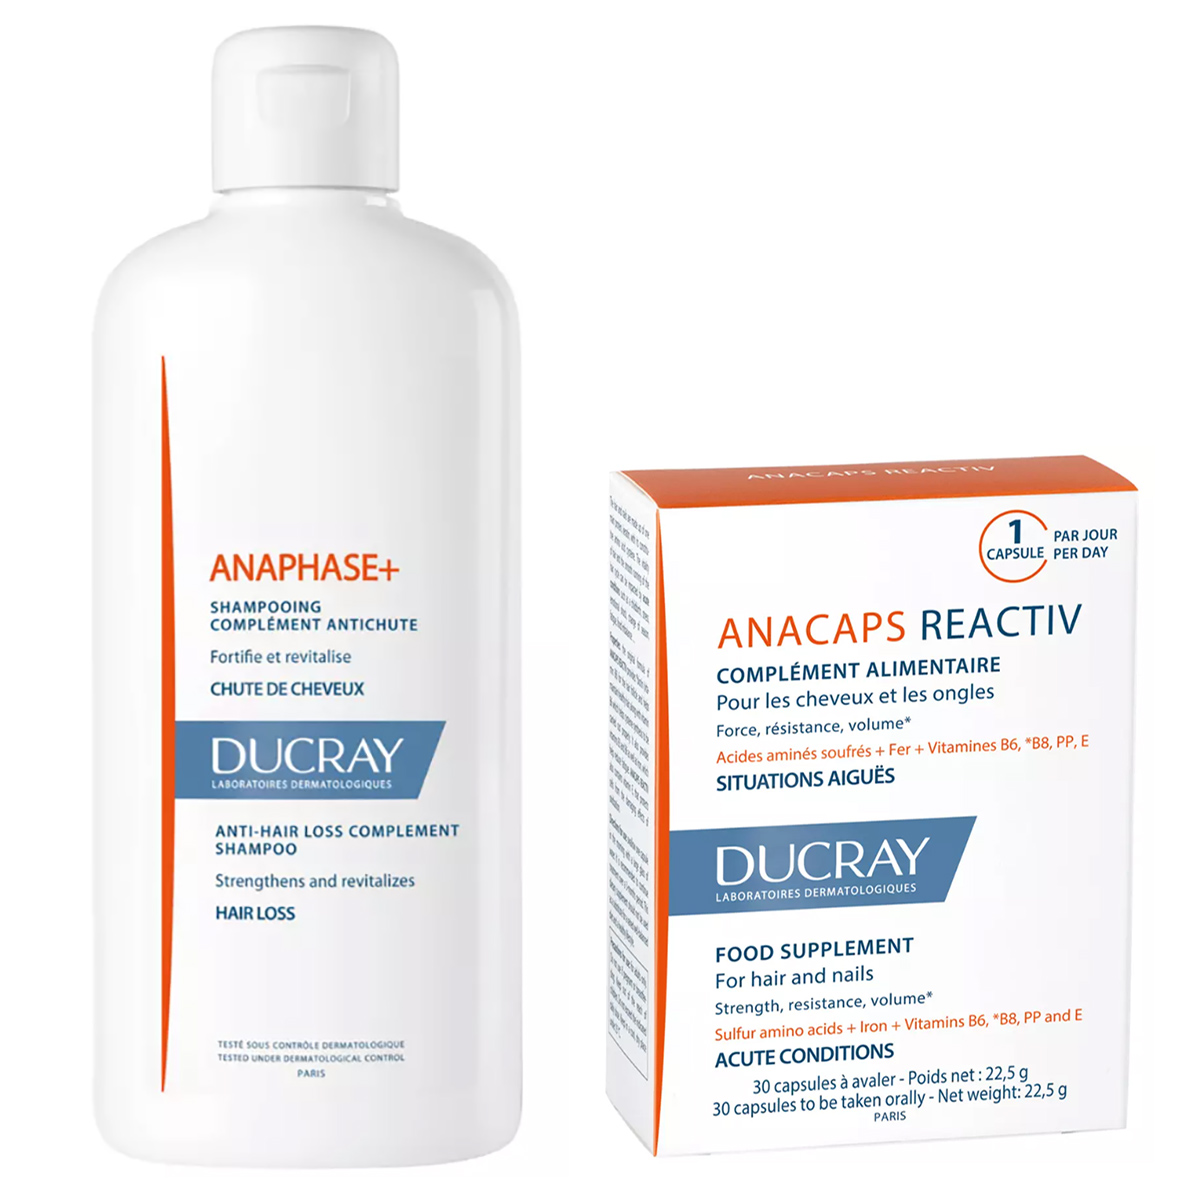 Ducray Набор для борьбы с выпадением волос: шампунь 400 мл и биологически активная добавка 30 капсул (Ducray, Anaphase+)